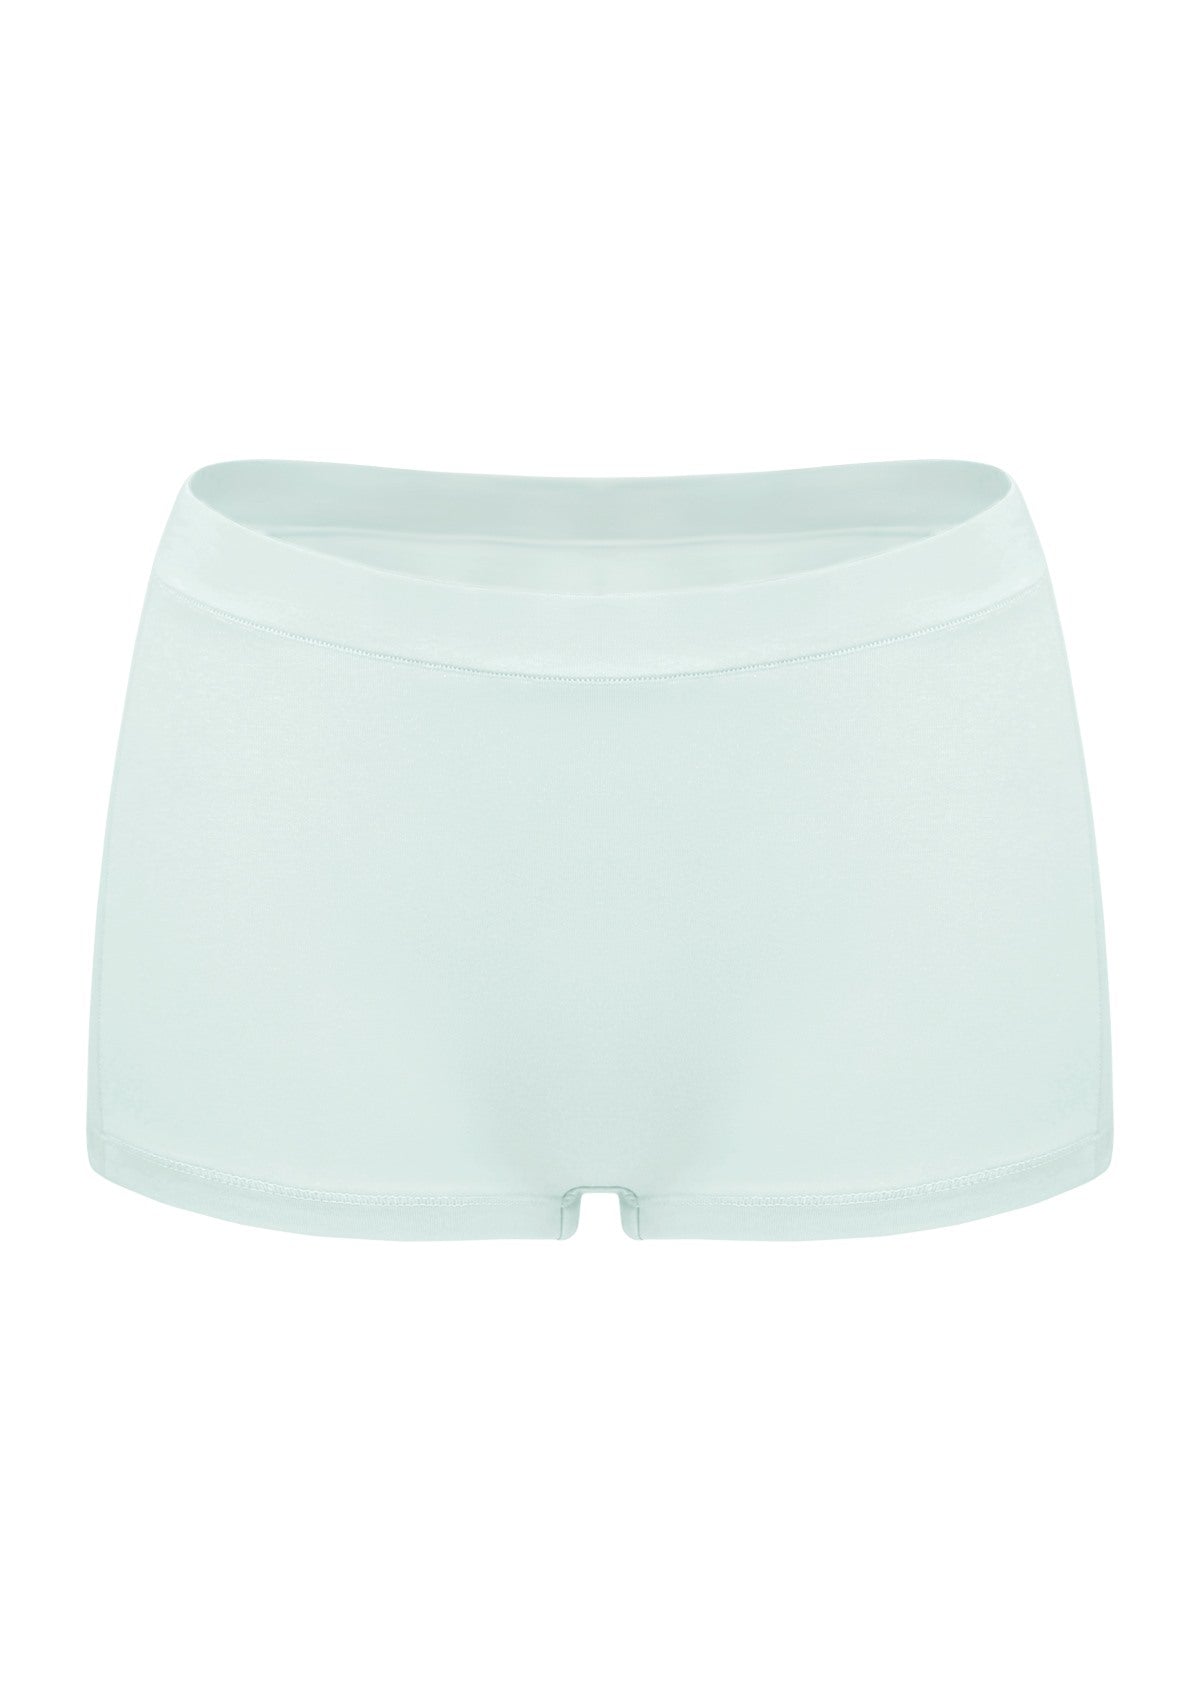 All-Day Comfort Mid-Rise Cotton Boyshorts Underwear 3 Pack - XXL / Black+White+Beige